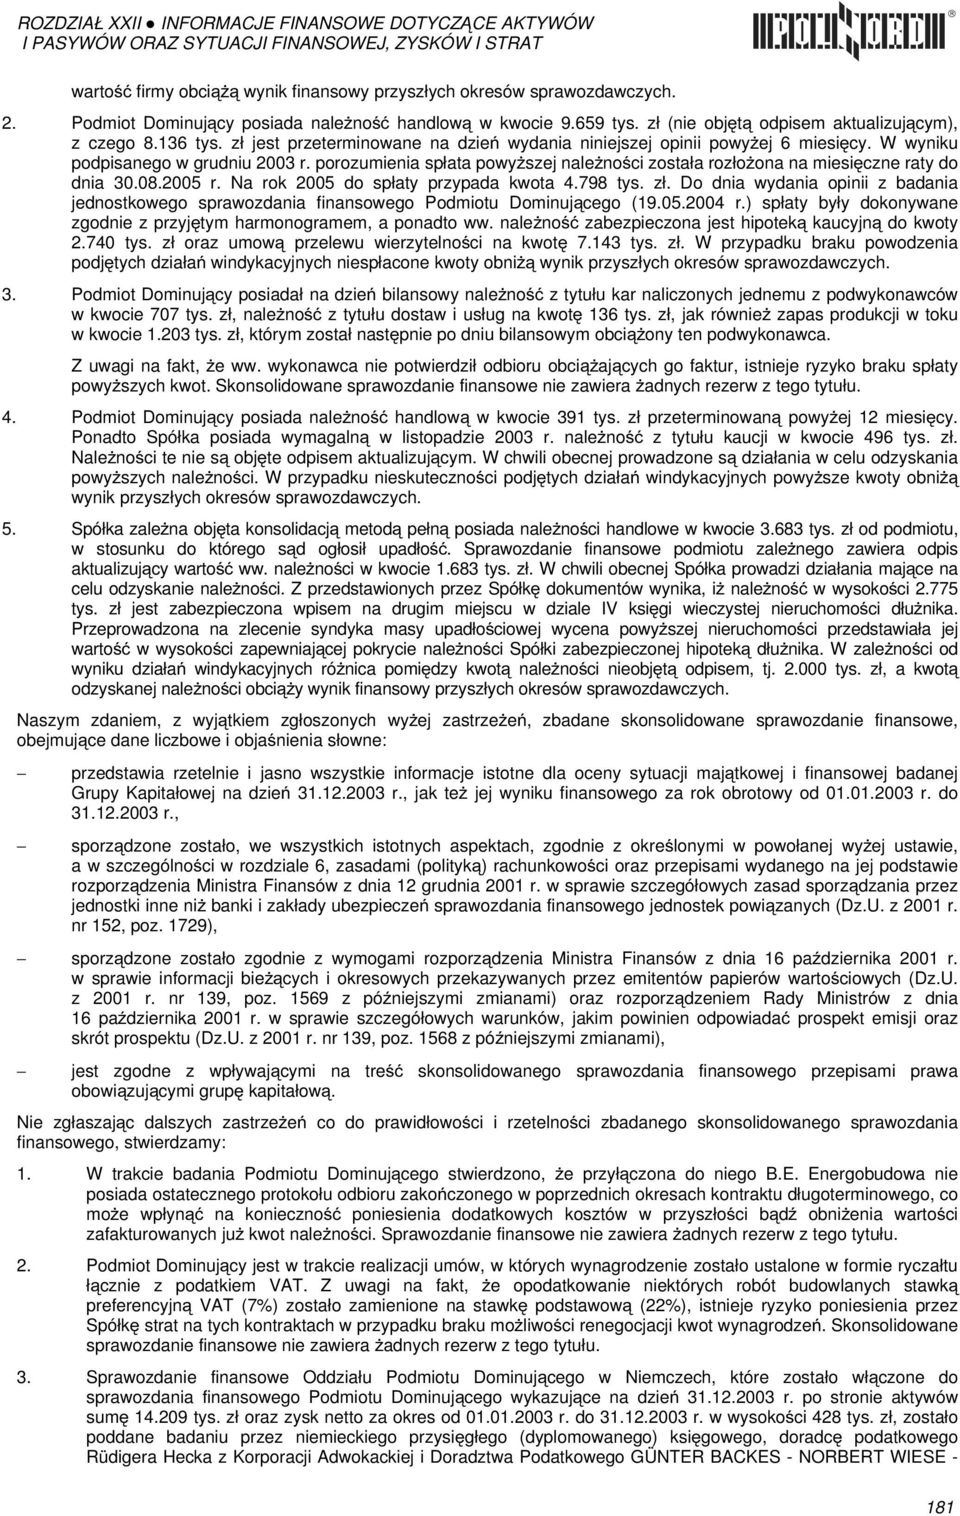 porozumienia spłata powyższej należności została rozłożona na miesięczne raty do dnia 30.08.2005 r. Na rok 2005 do spłaty przypada kwota 4.798 tys. zł.